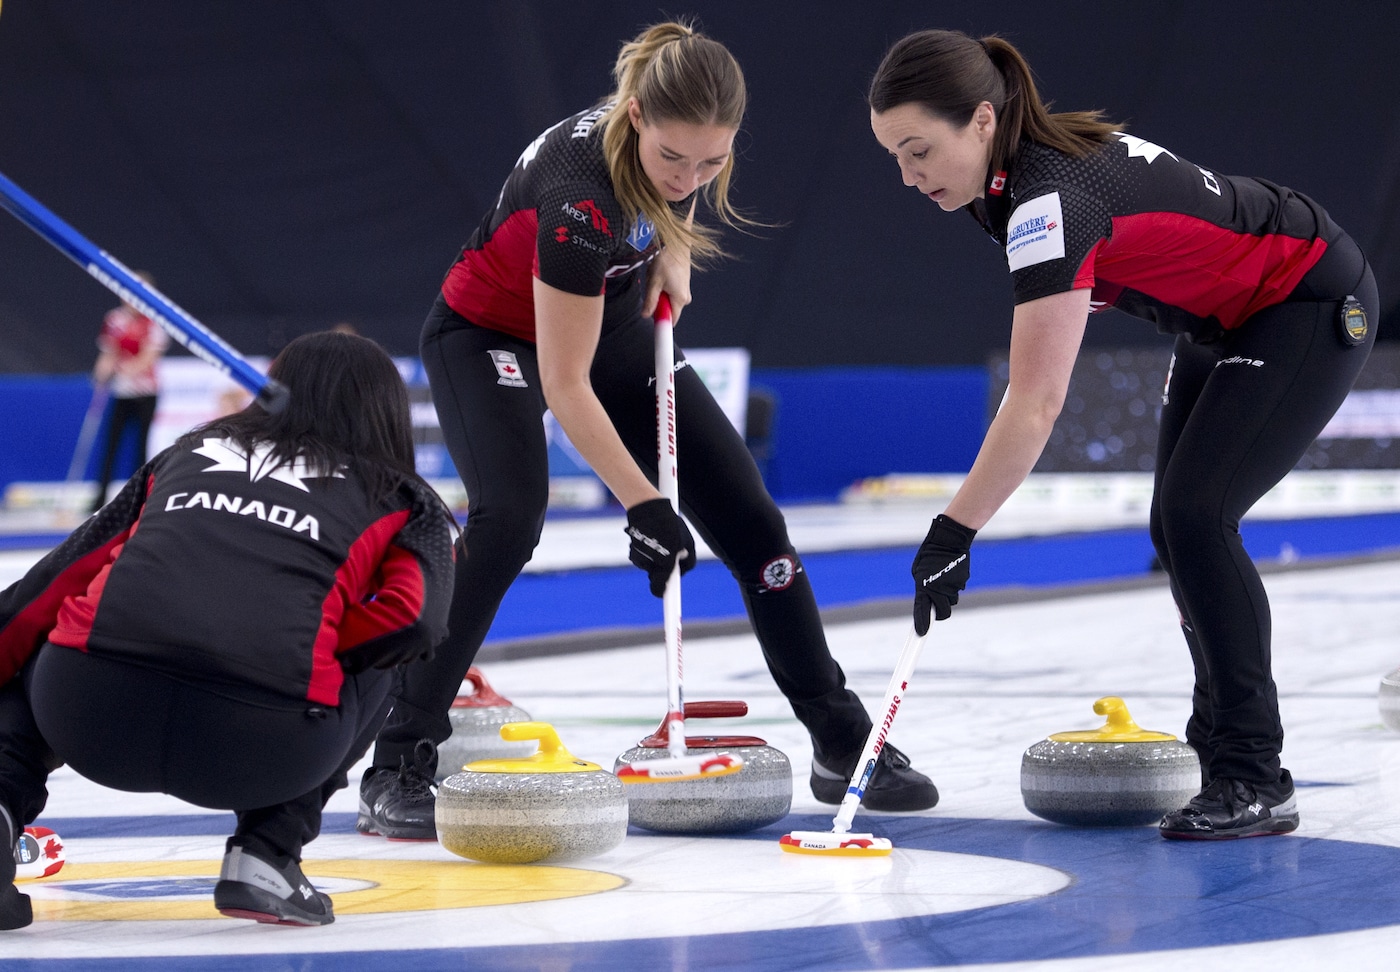 Curling Canada Équipe Canada éliminée